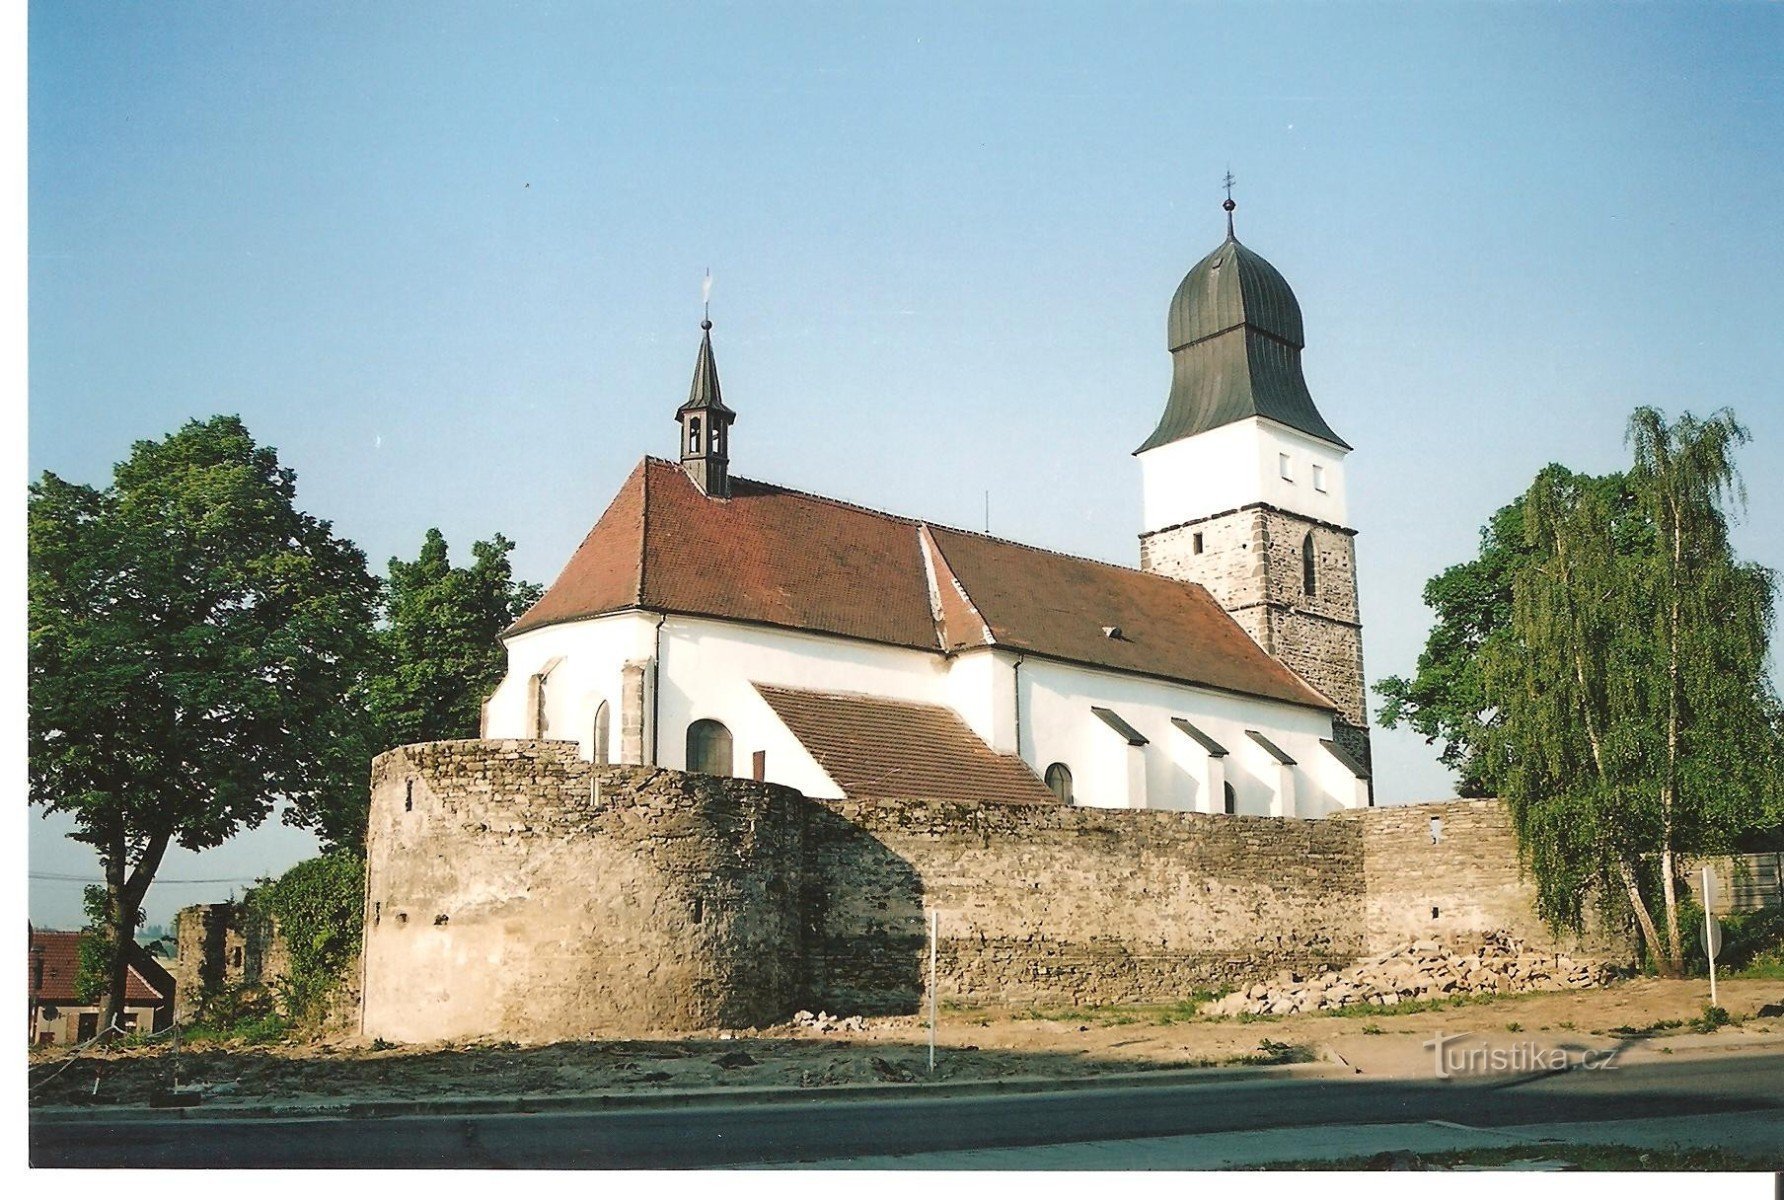 Velká Bíteš - укріплена церква